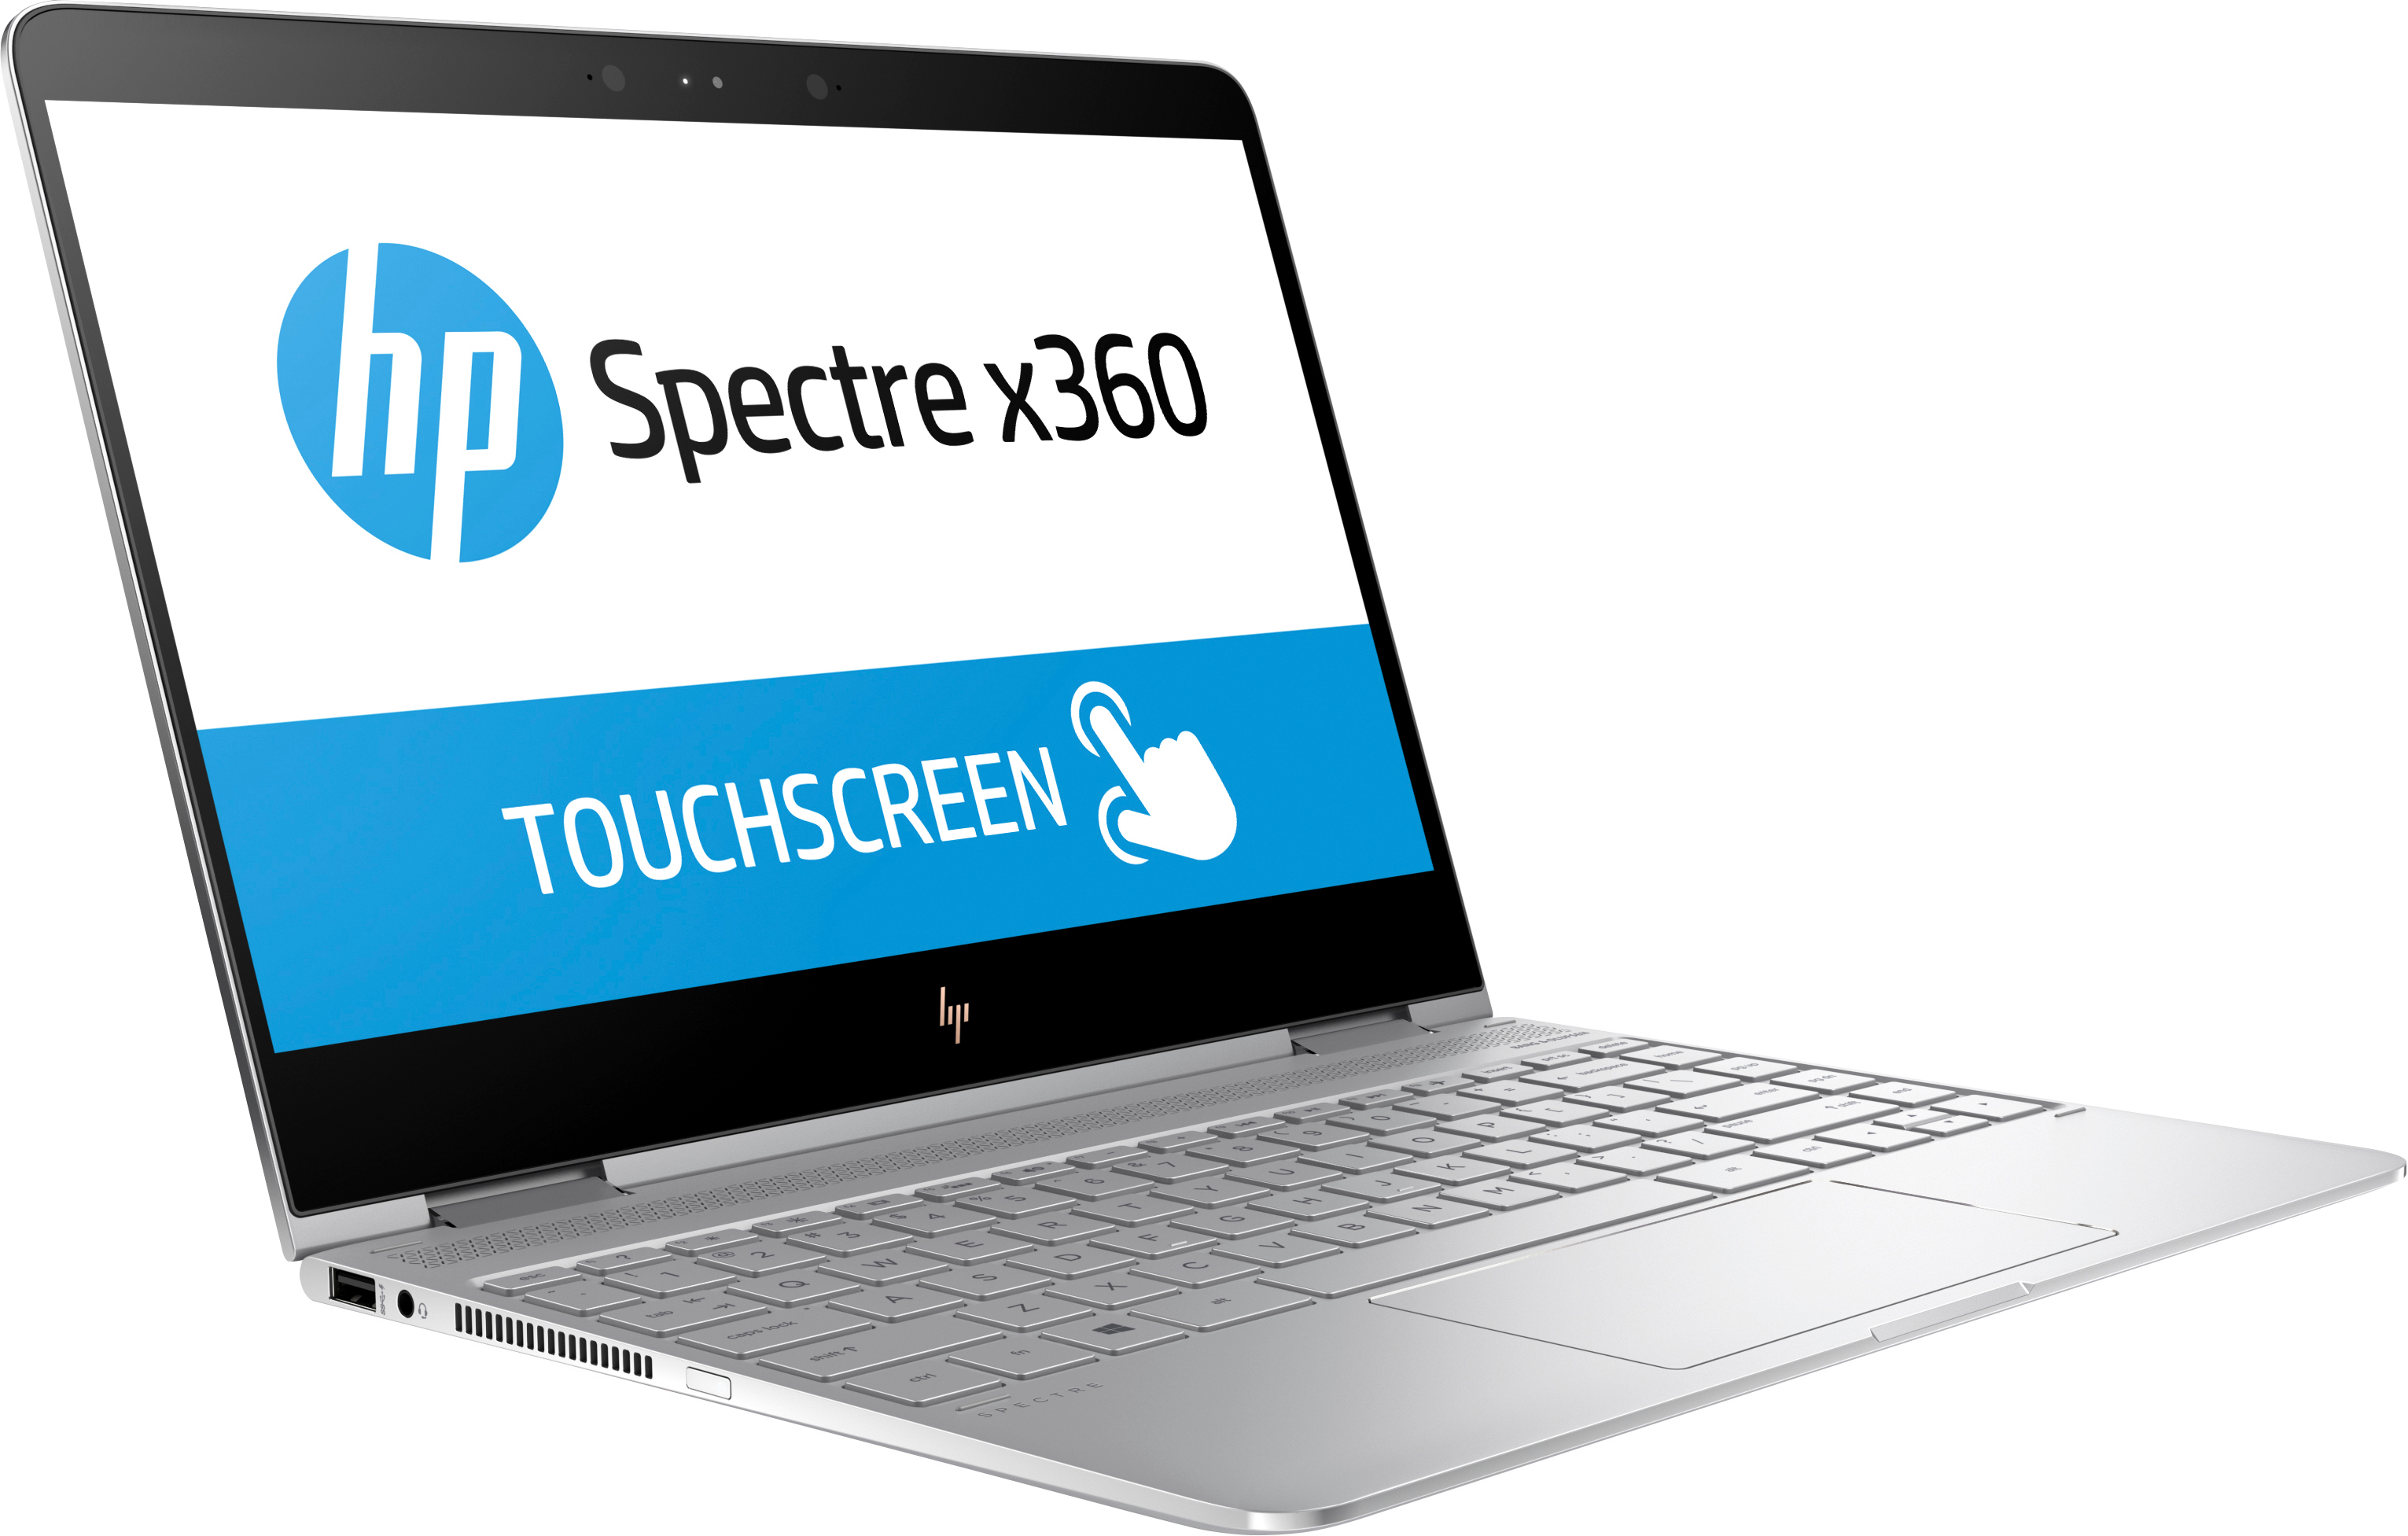 H P Spectrex360 Touchscreen Laptop